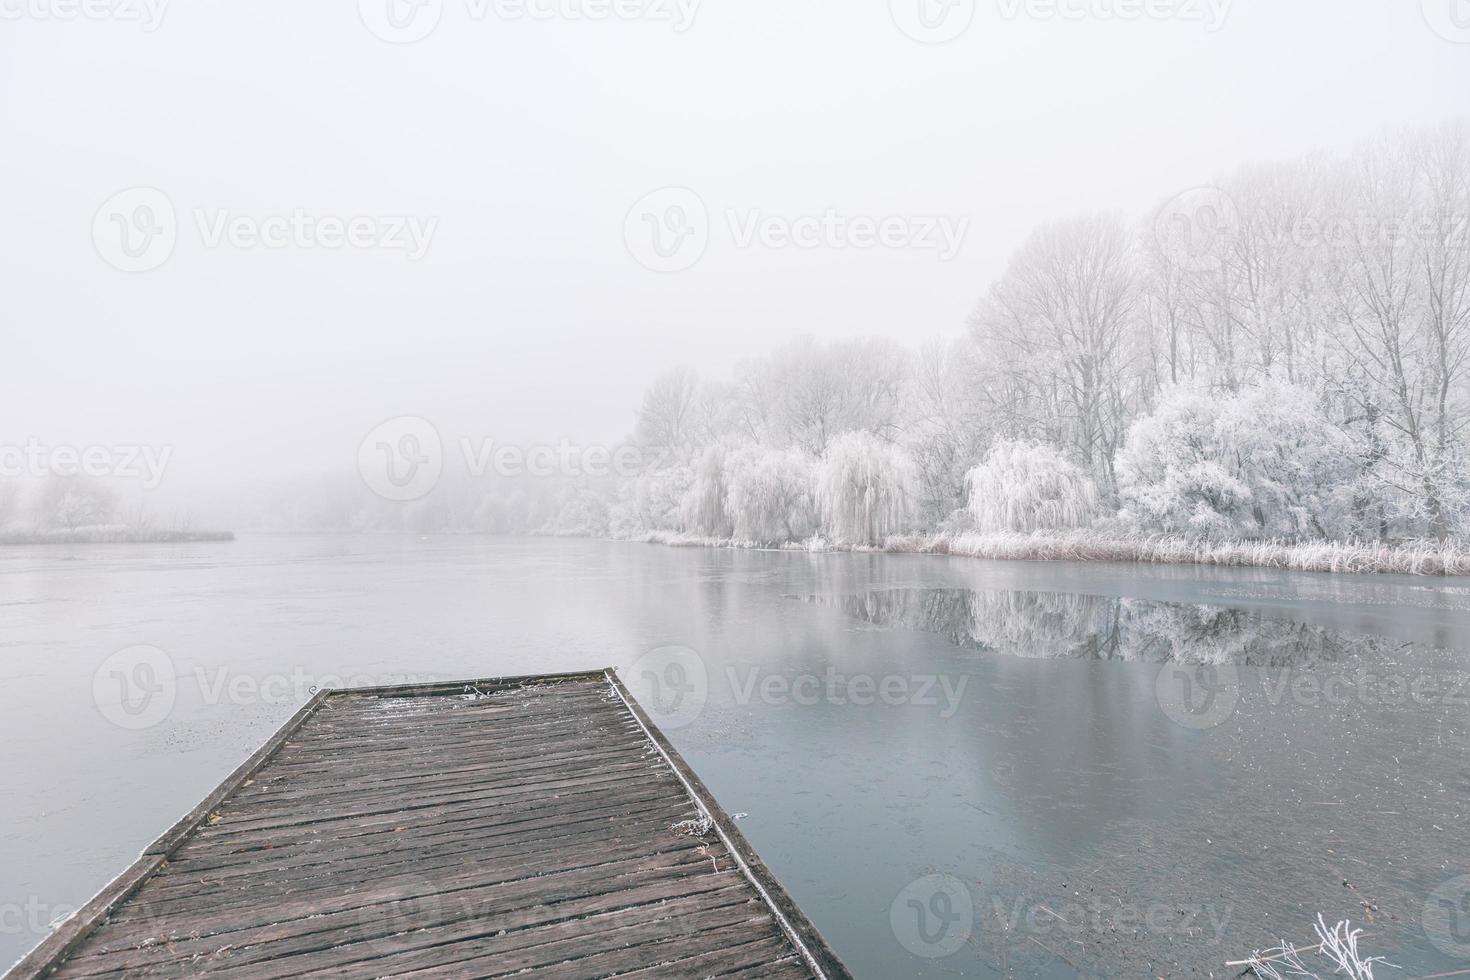 paisaje de invierno por la noche. muelle de madera sobre un hermoso lago helado. árboles con escarcha, paisaje de invierno estacional tranquilo. pacífica, vista blanca foto